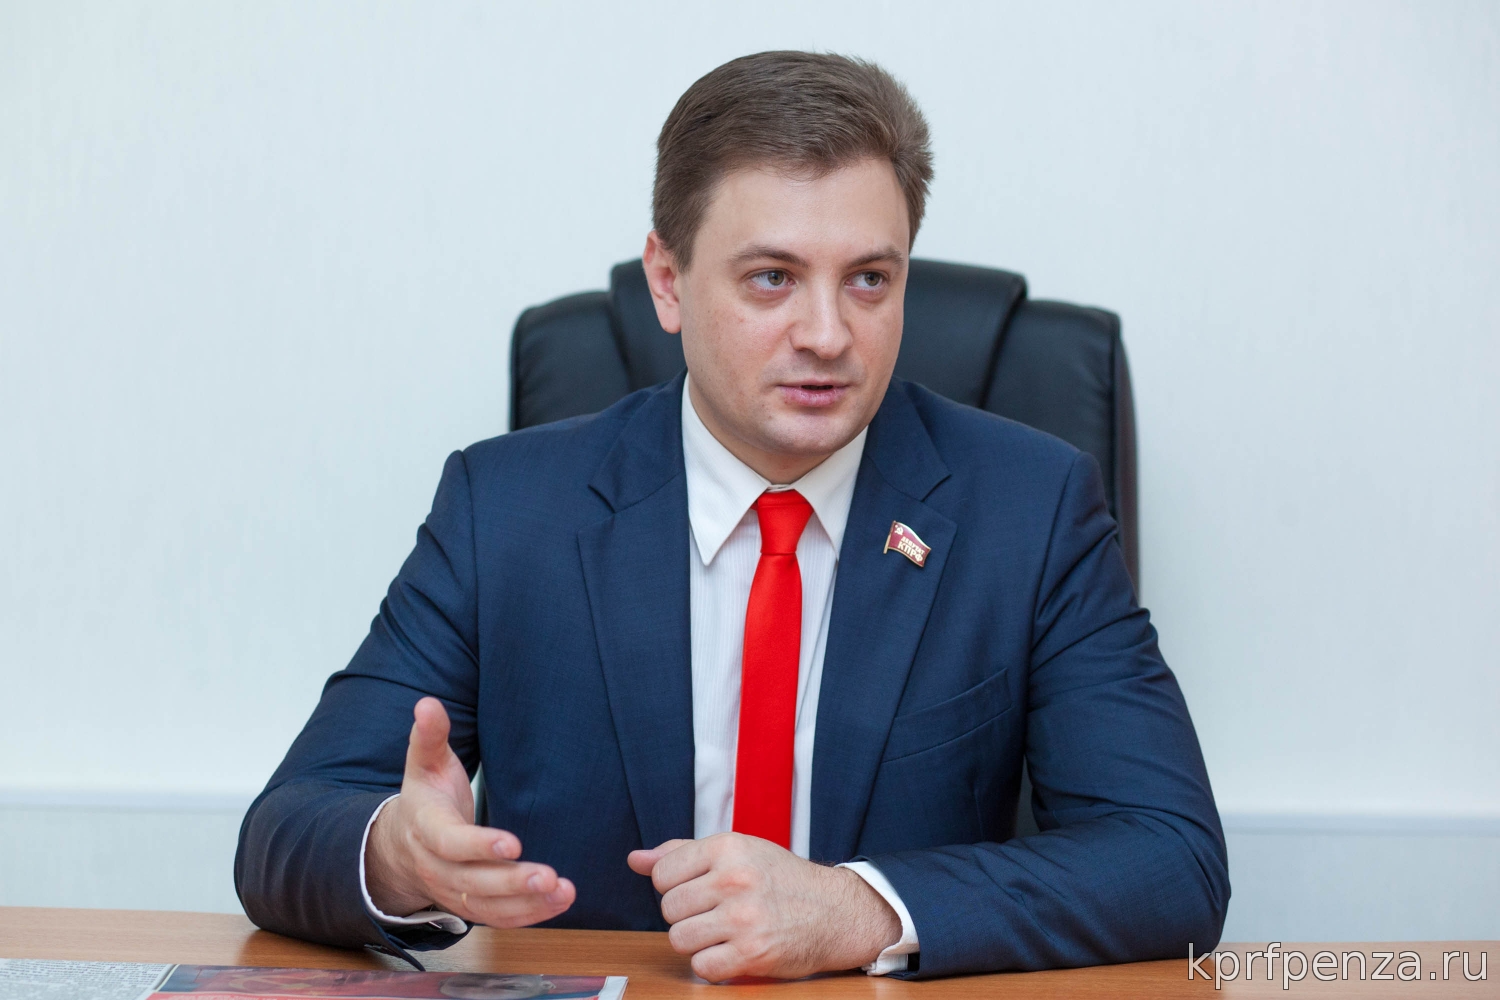 Г.П. Камнев: «Избирательный кодекс КПРФ сделает выборы прозрачными и равноправными»